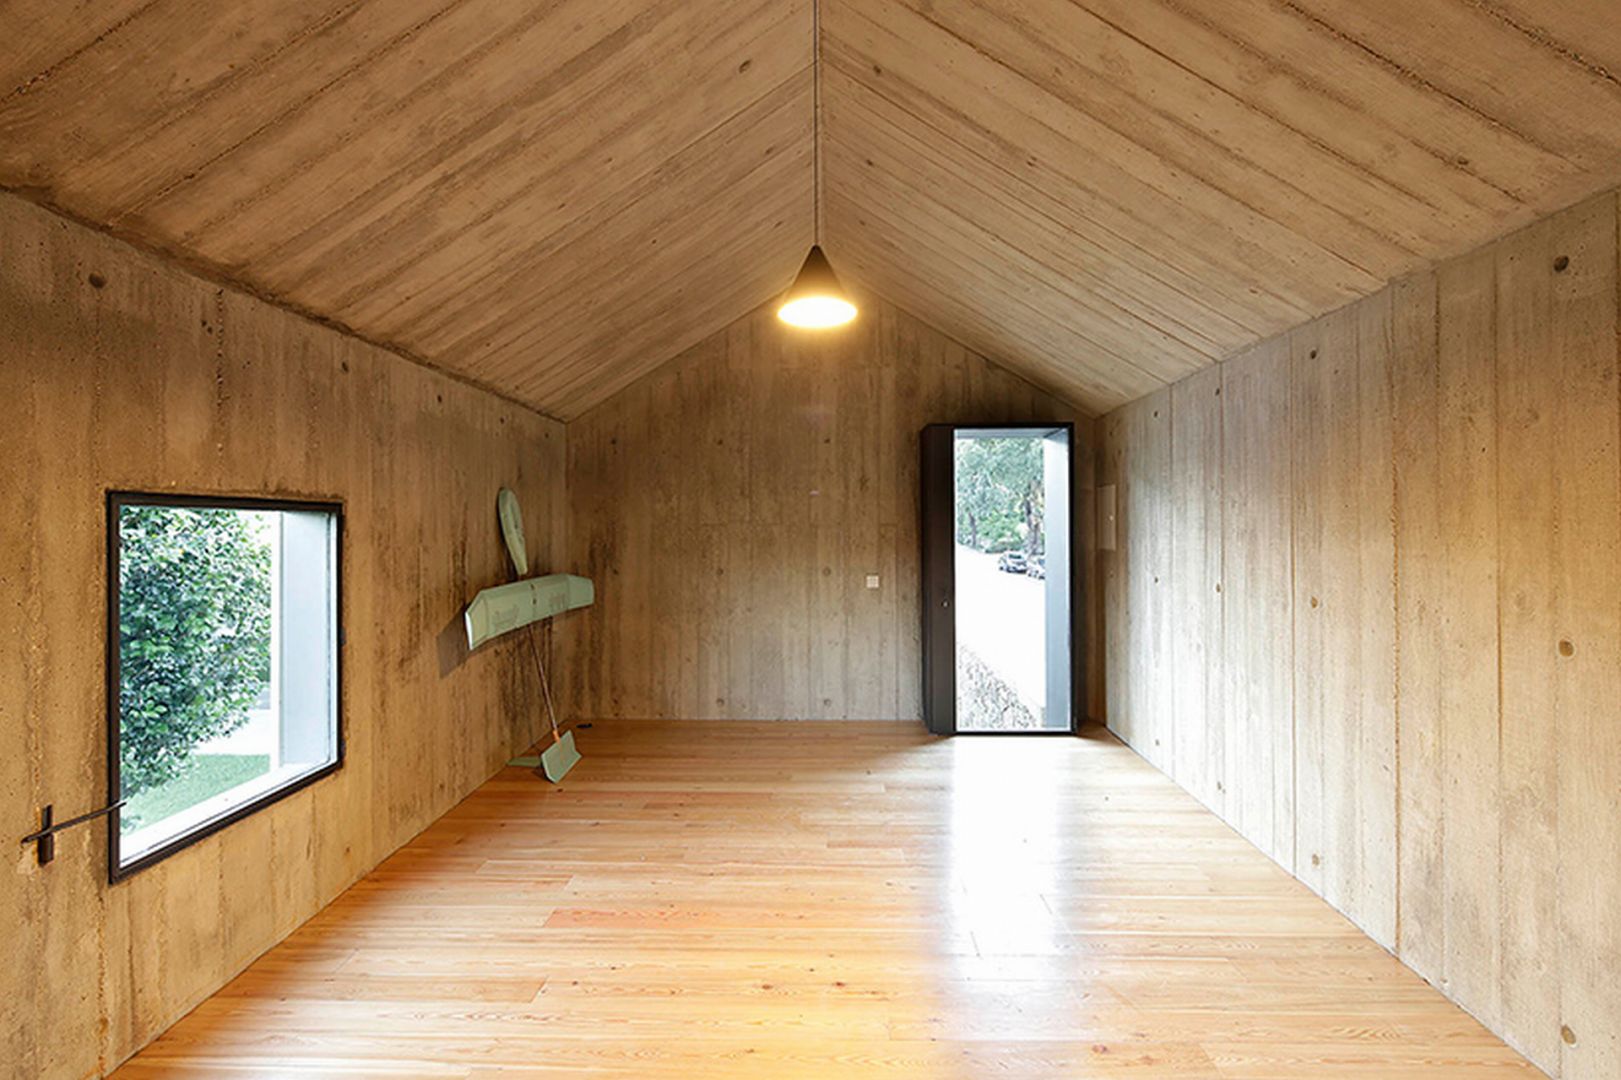 Na górnym poziomie znajduje się pokój dziecięcy, obudowany wewnątrz w całości drewnem, które ociepla wygląd zimnego betonowego domu. Fot. Nelson Garrido